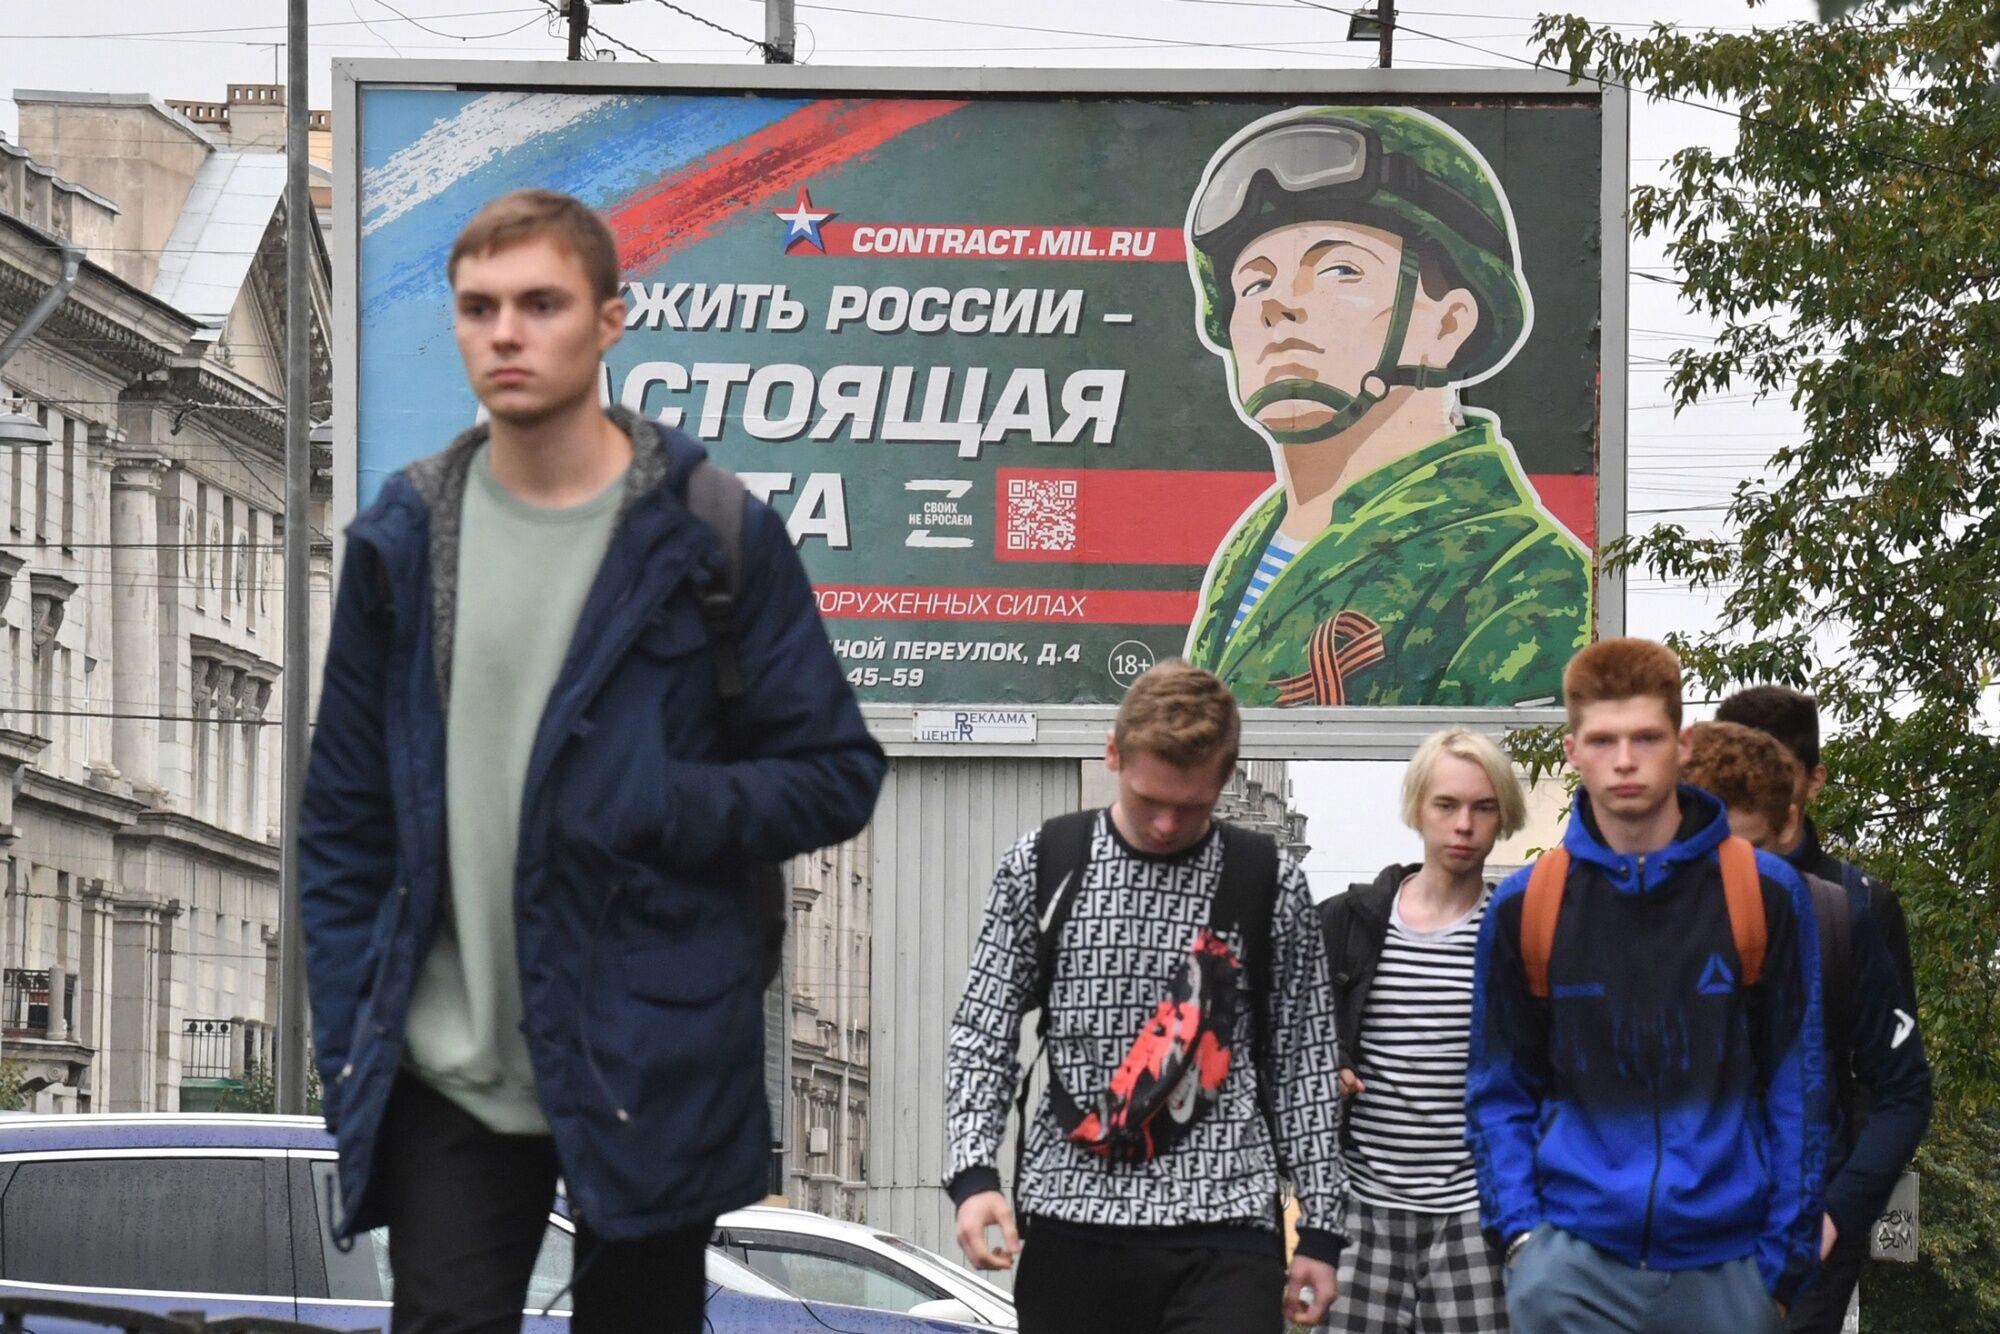 Một tấm áp phích khuyến khích người dân tình nguyện nhập ngũ được treo ở thành phố St. Petersburg của Nga.